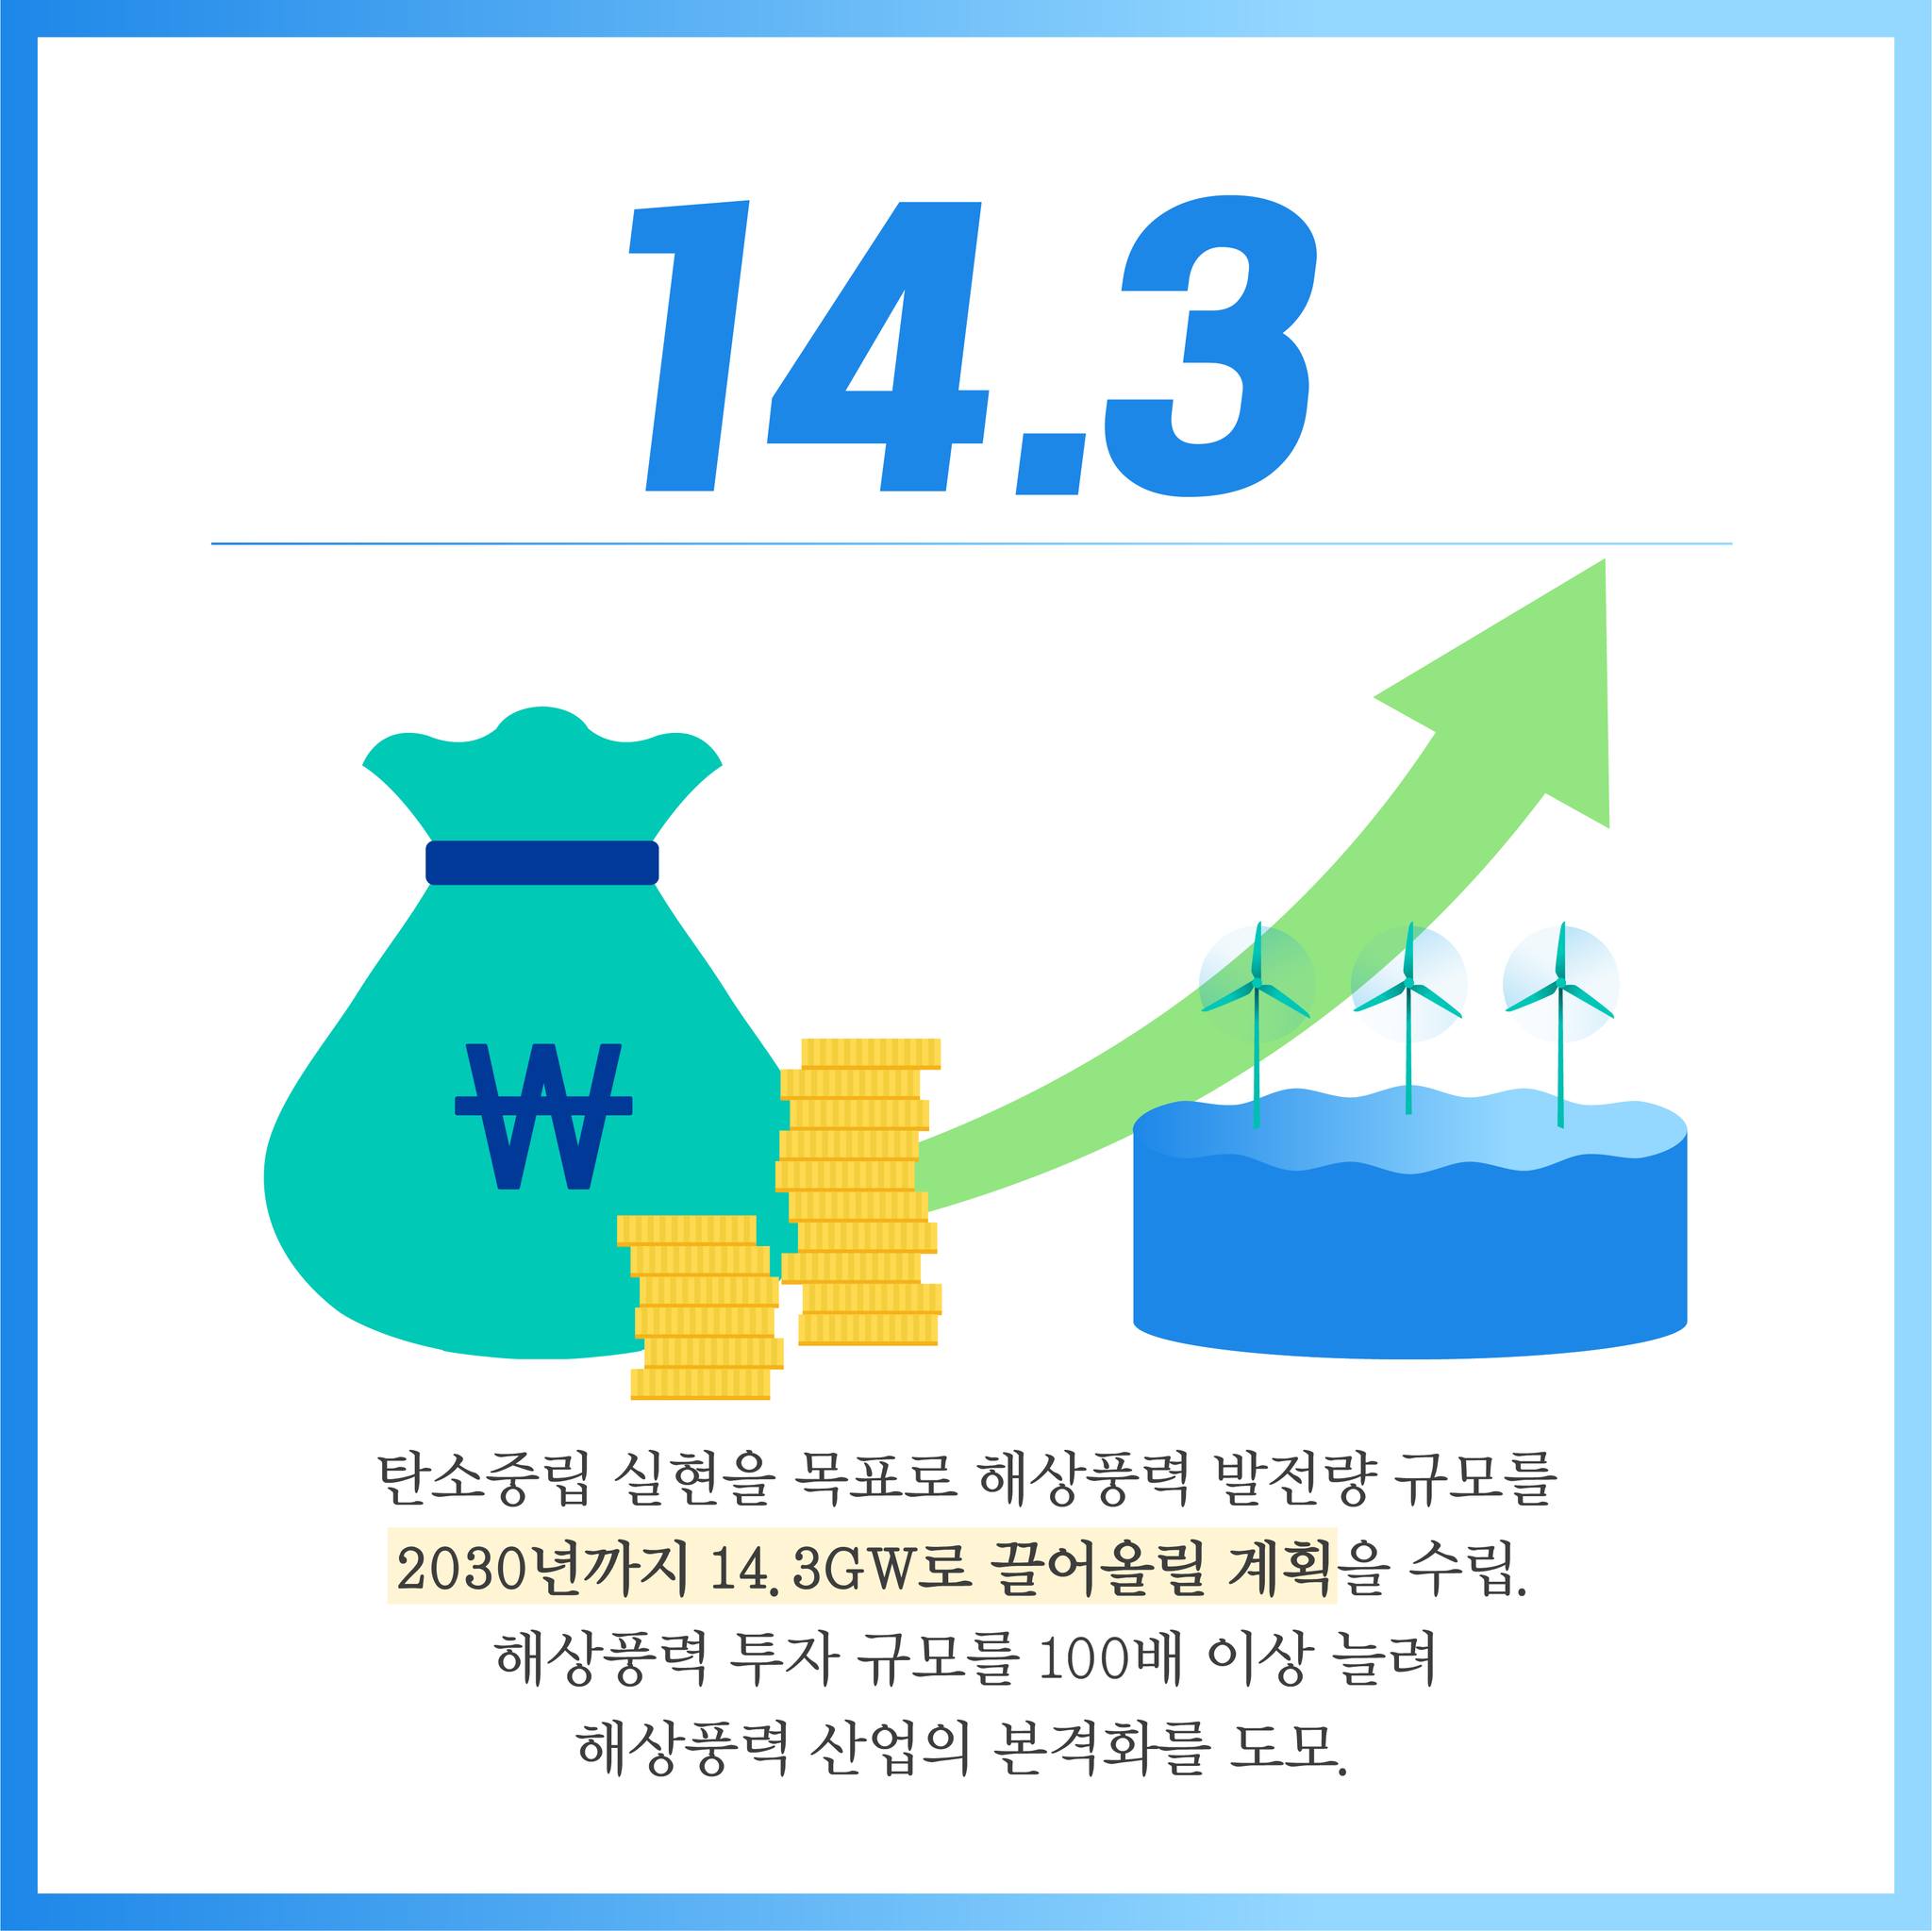 14.3 탄소중립 실현을 목표로 해상풍력 발전량 규모를 2030년까지 14. 3GW로 끌어올릴 계획을 수립. 해상풍력 투자 규모를 100배 이상 늘려 해상풍력 산업의 본격화를 도모